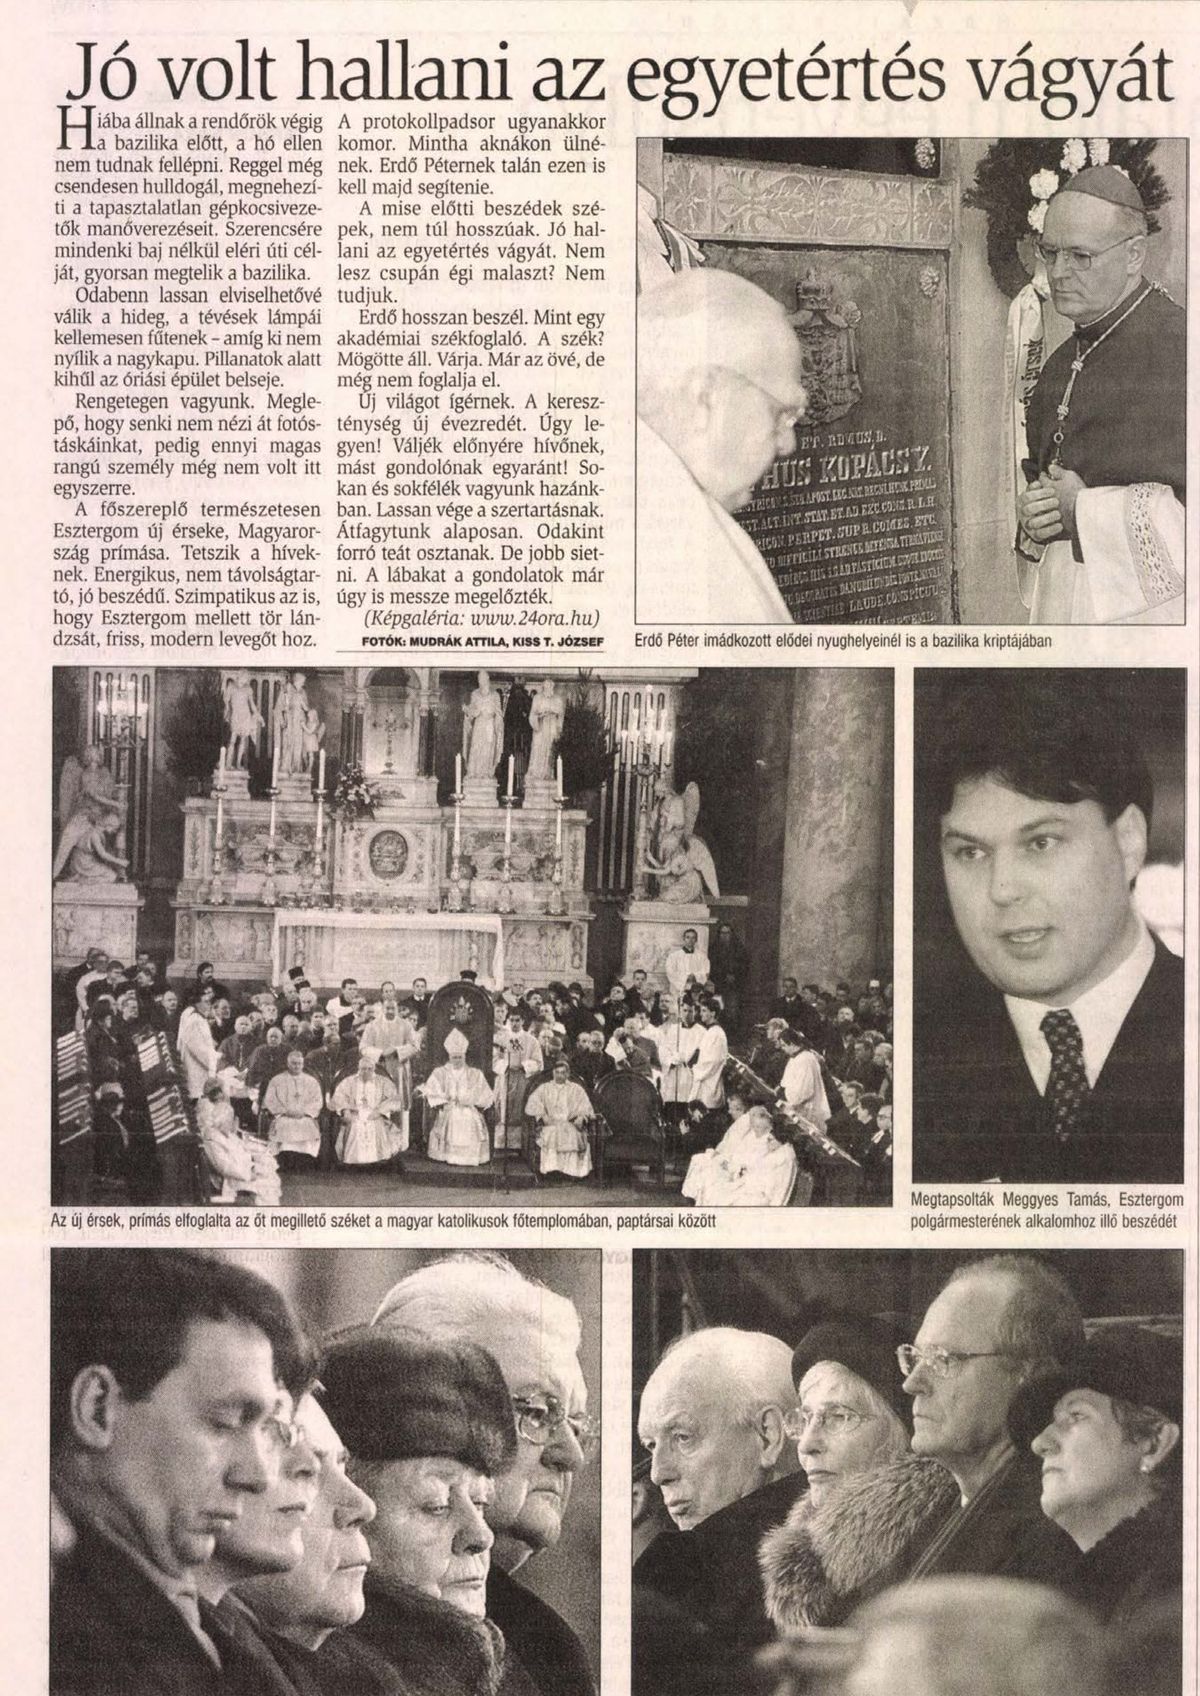 A szertartáson többek között Orbán Viktor, Horn gyula, Boross Péter, Mádl Ferenc is részt vett 20 éve